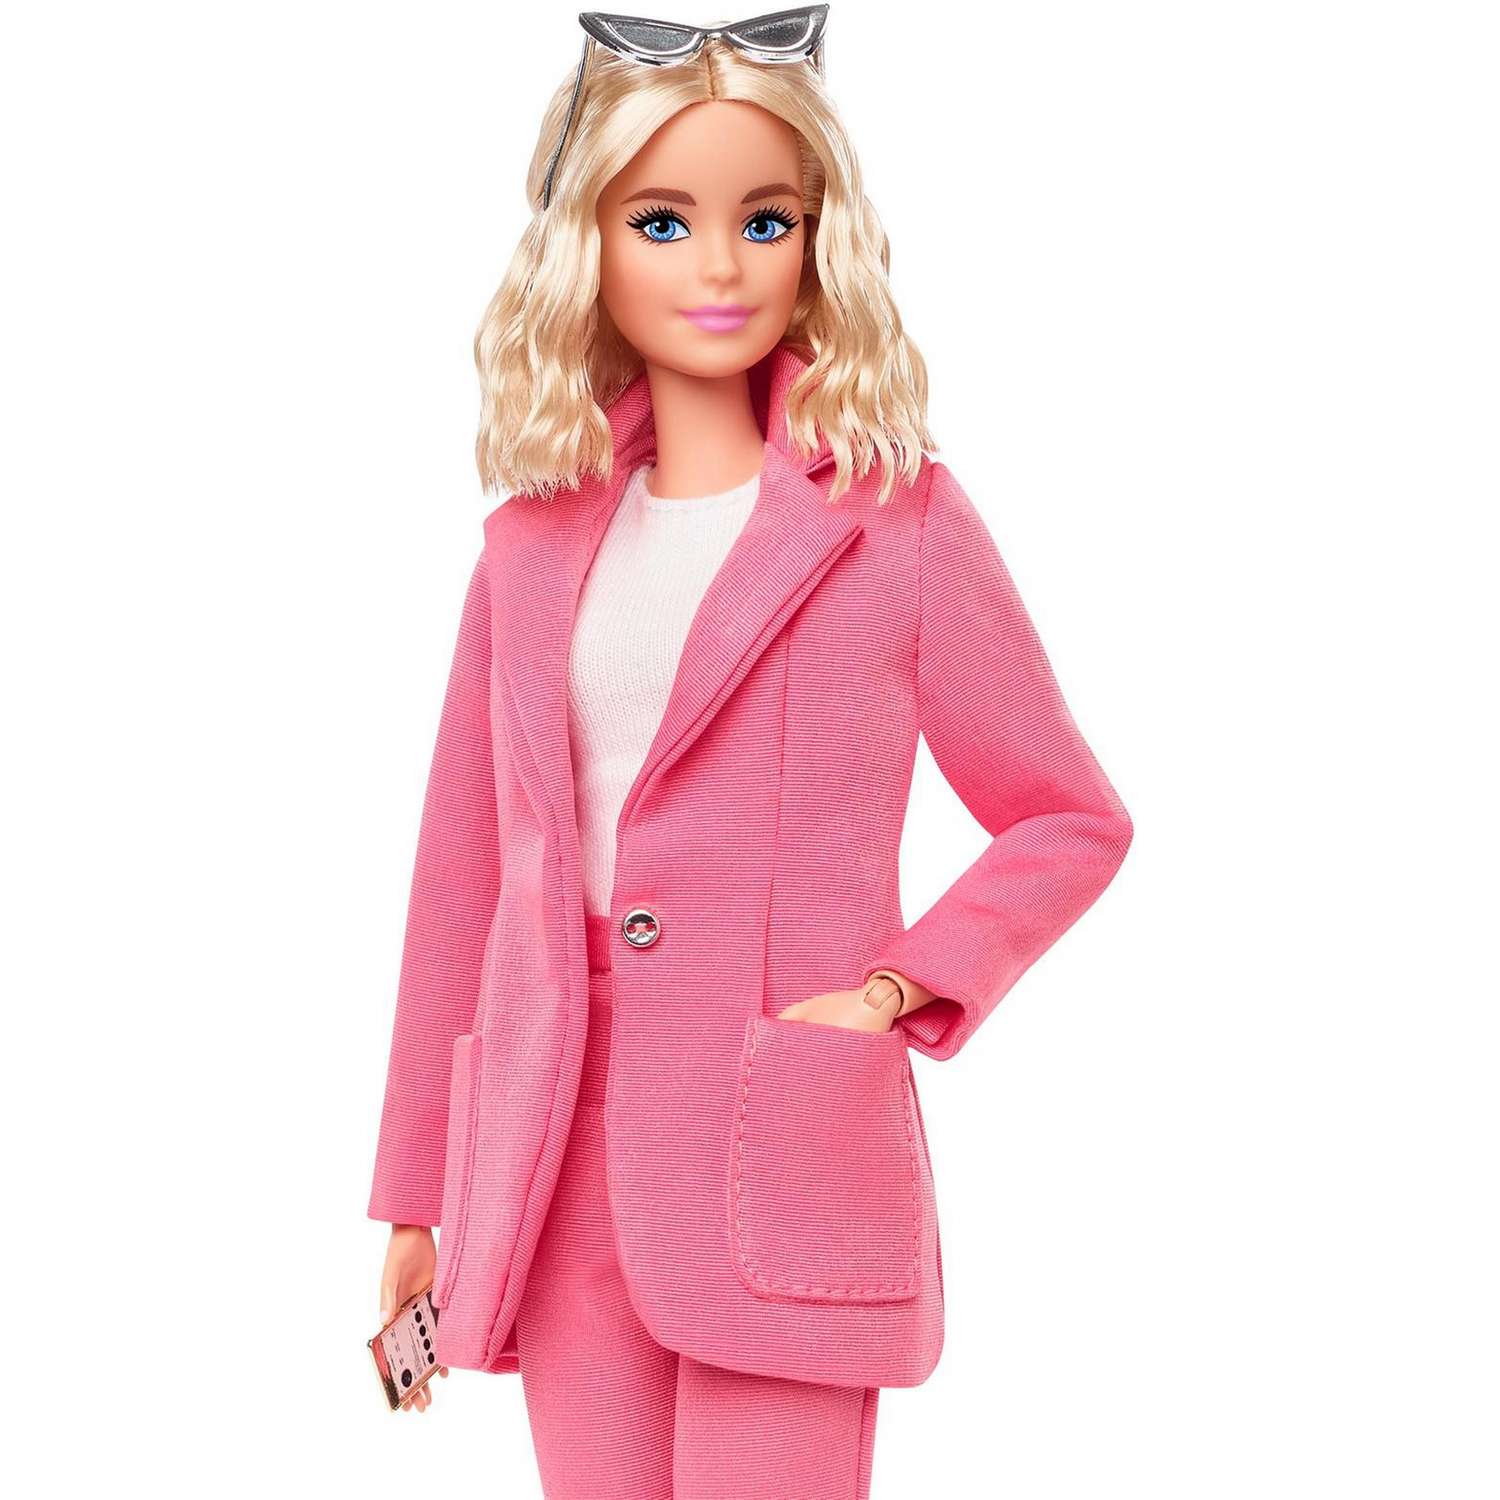 Кукла Barbie Мода Платина коллекционная GTJ82 GTJ82 - фото 13